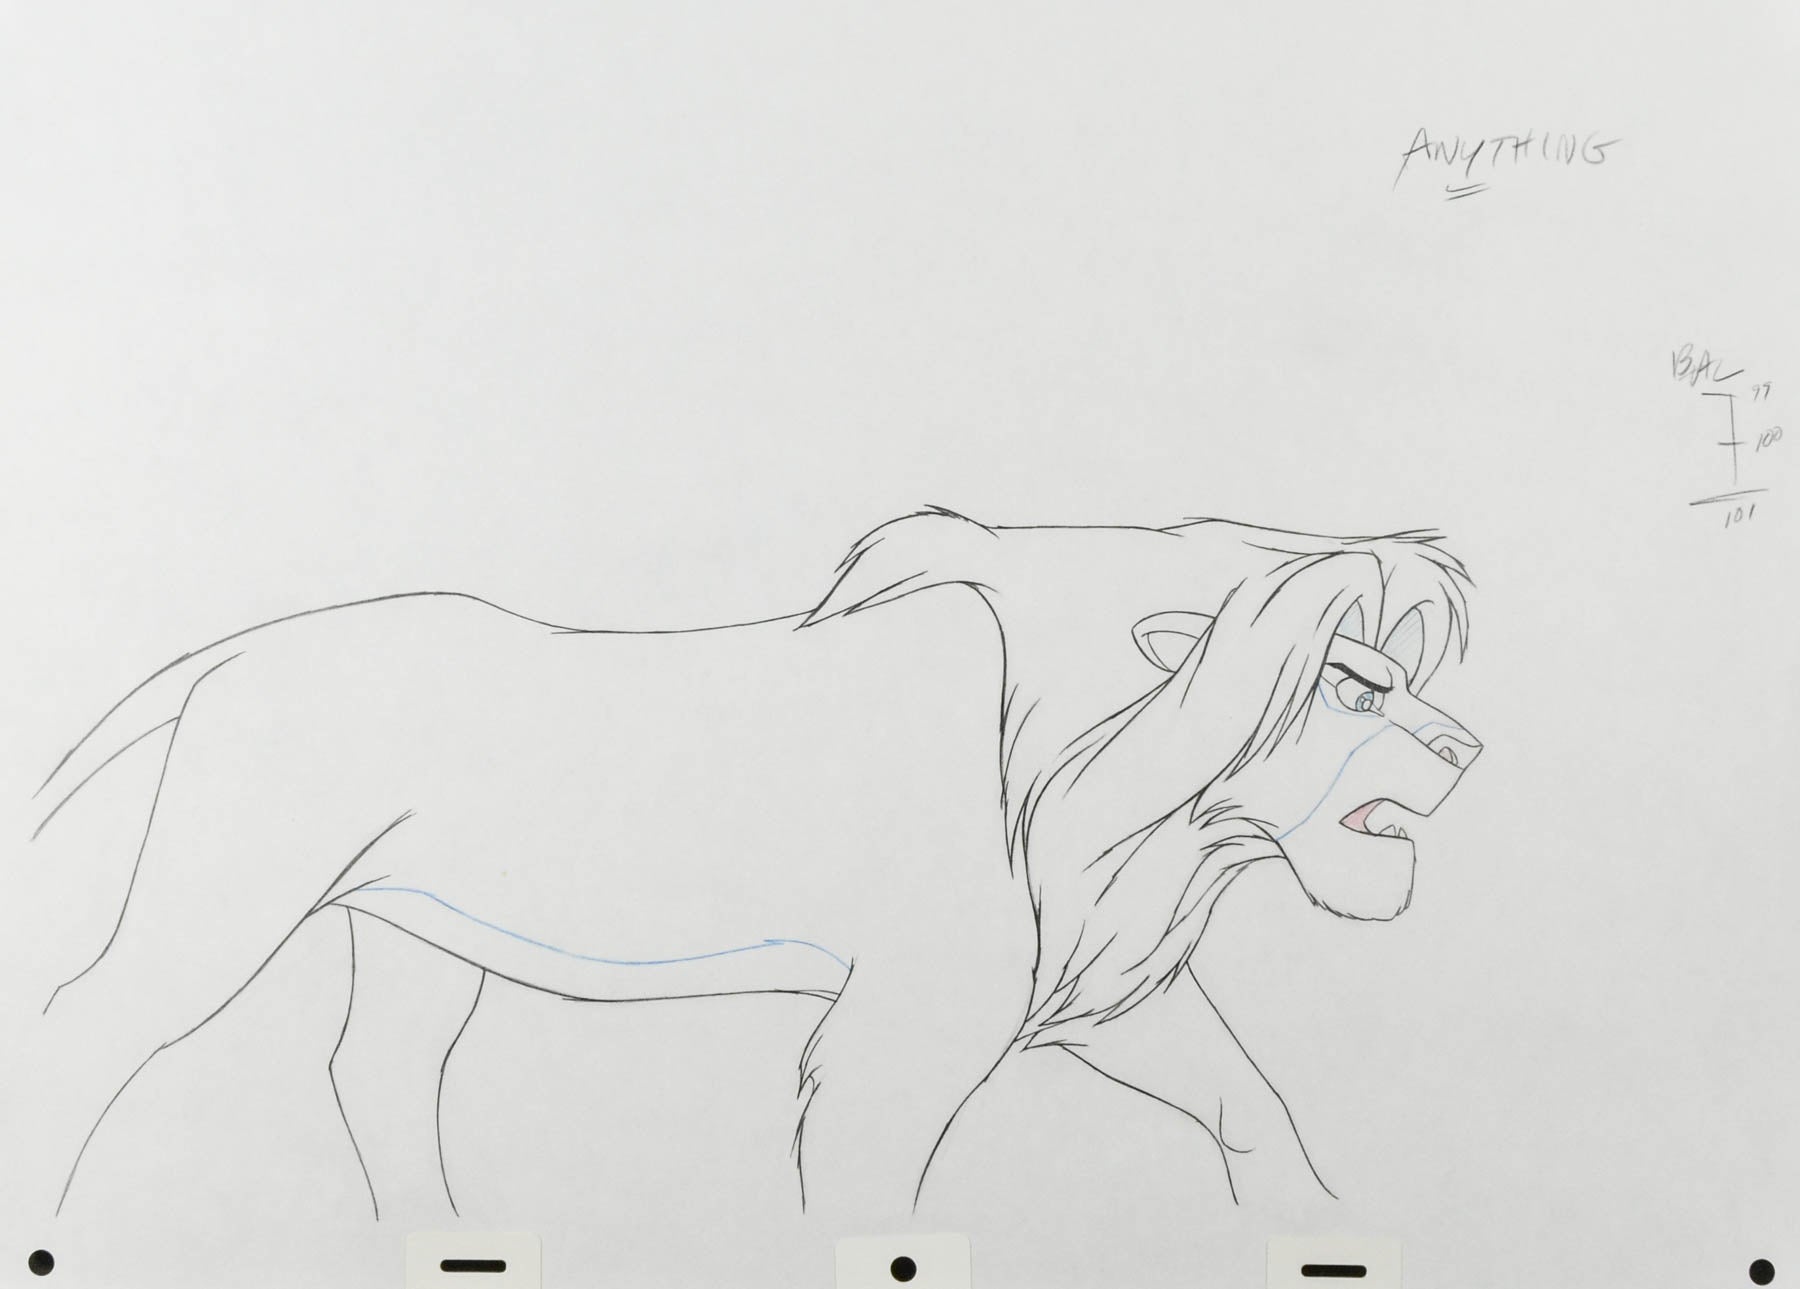 lion king rafiki drawing simba